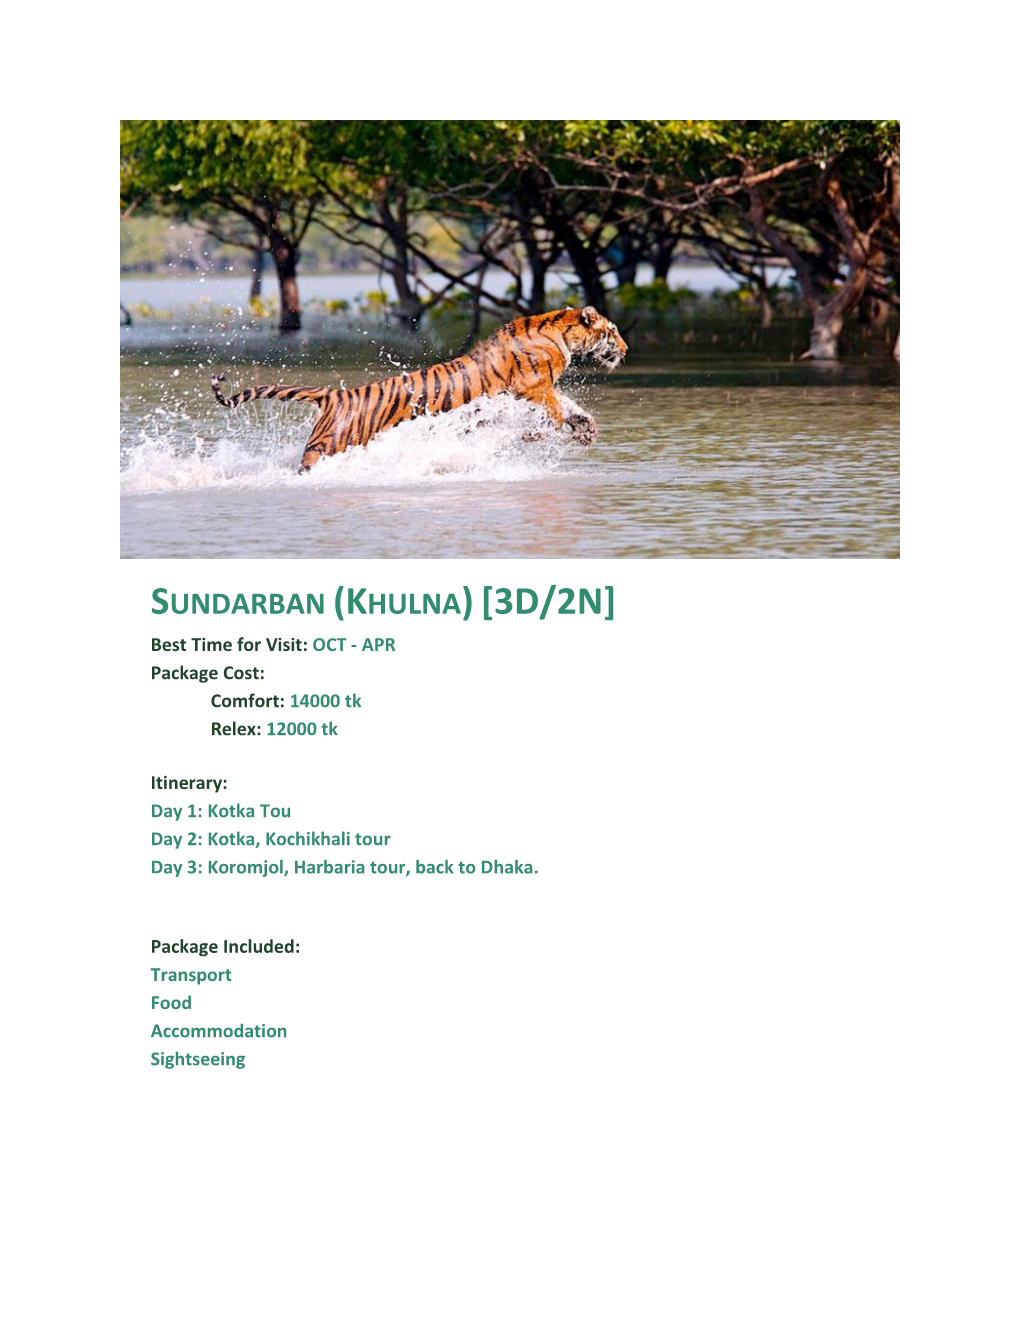 Sundarban (Khulna)[3D/2N]